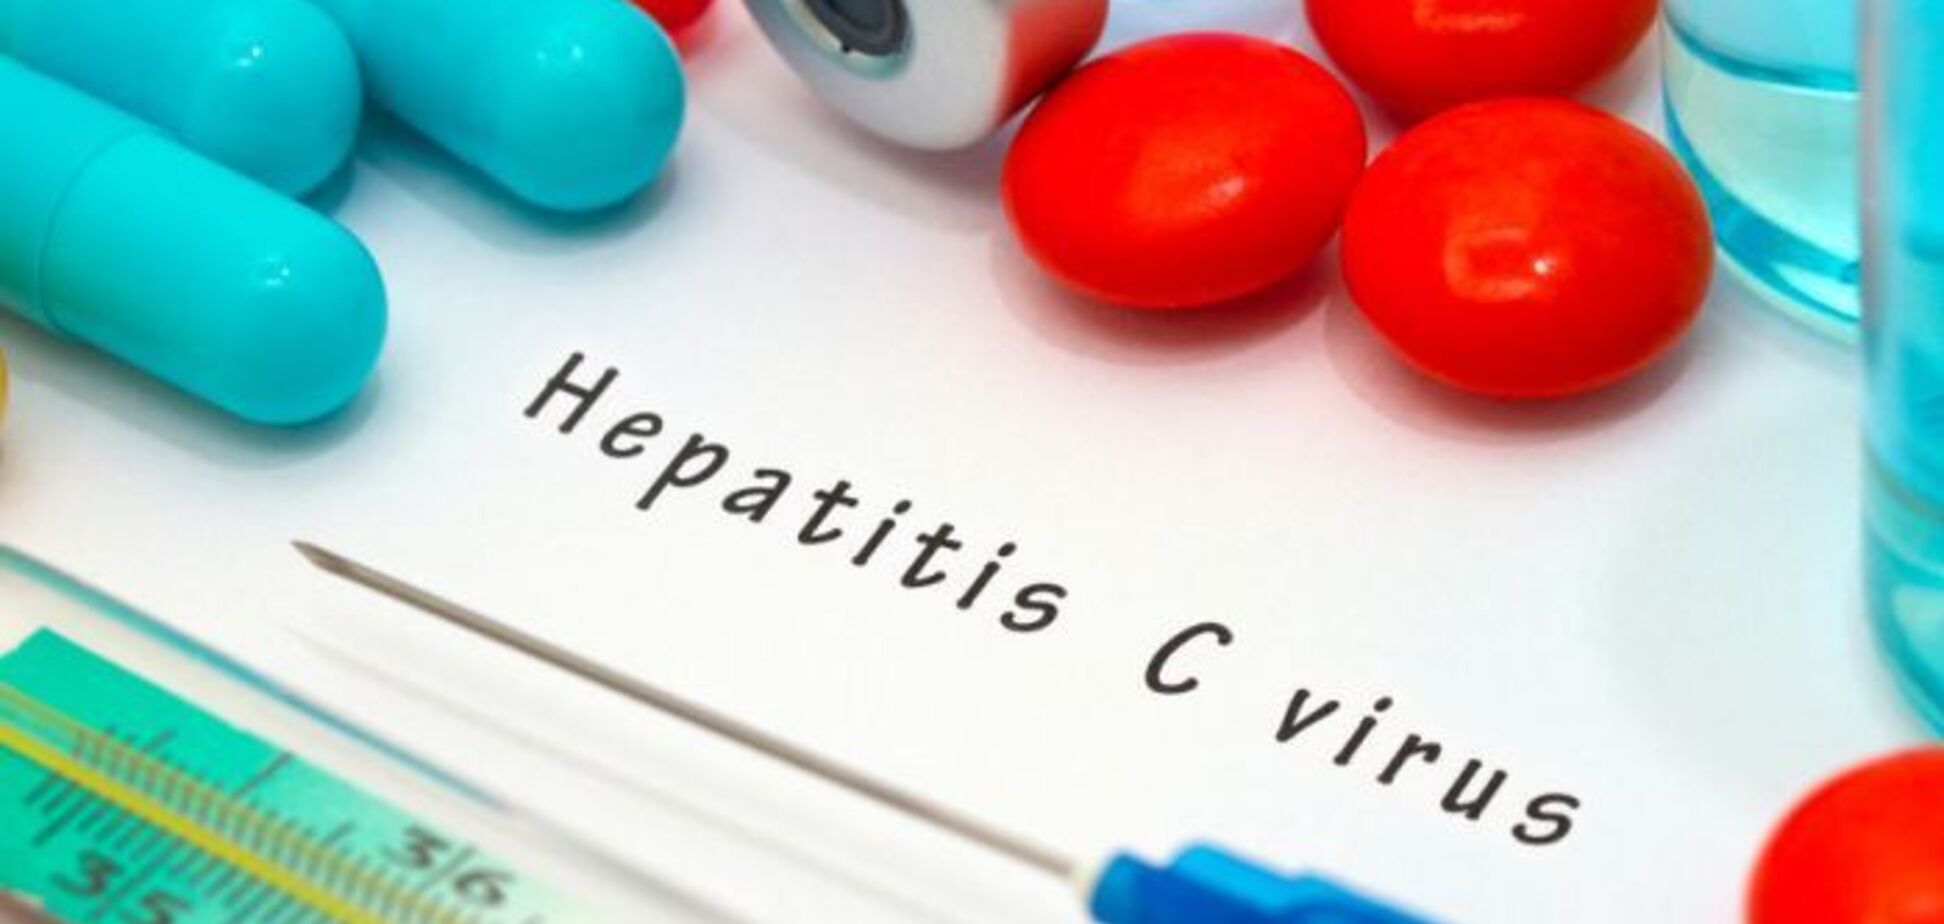 Проблема гепатита С в Украине: цены, доступность лекарств